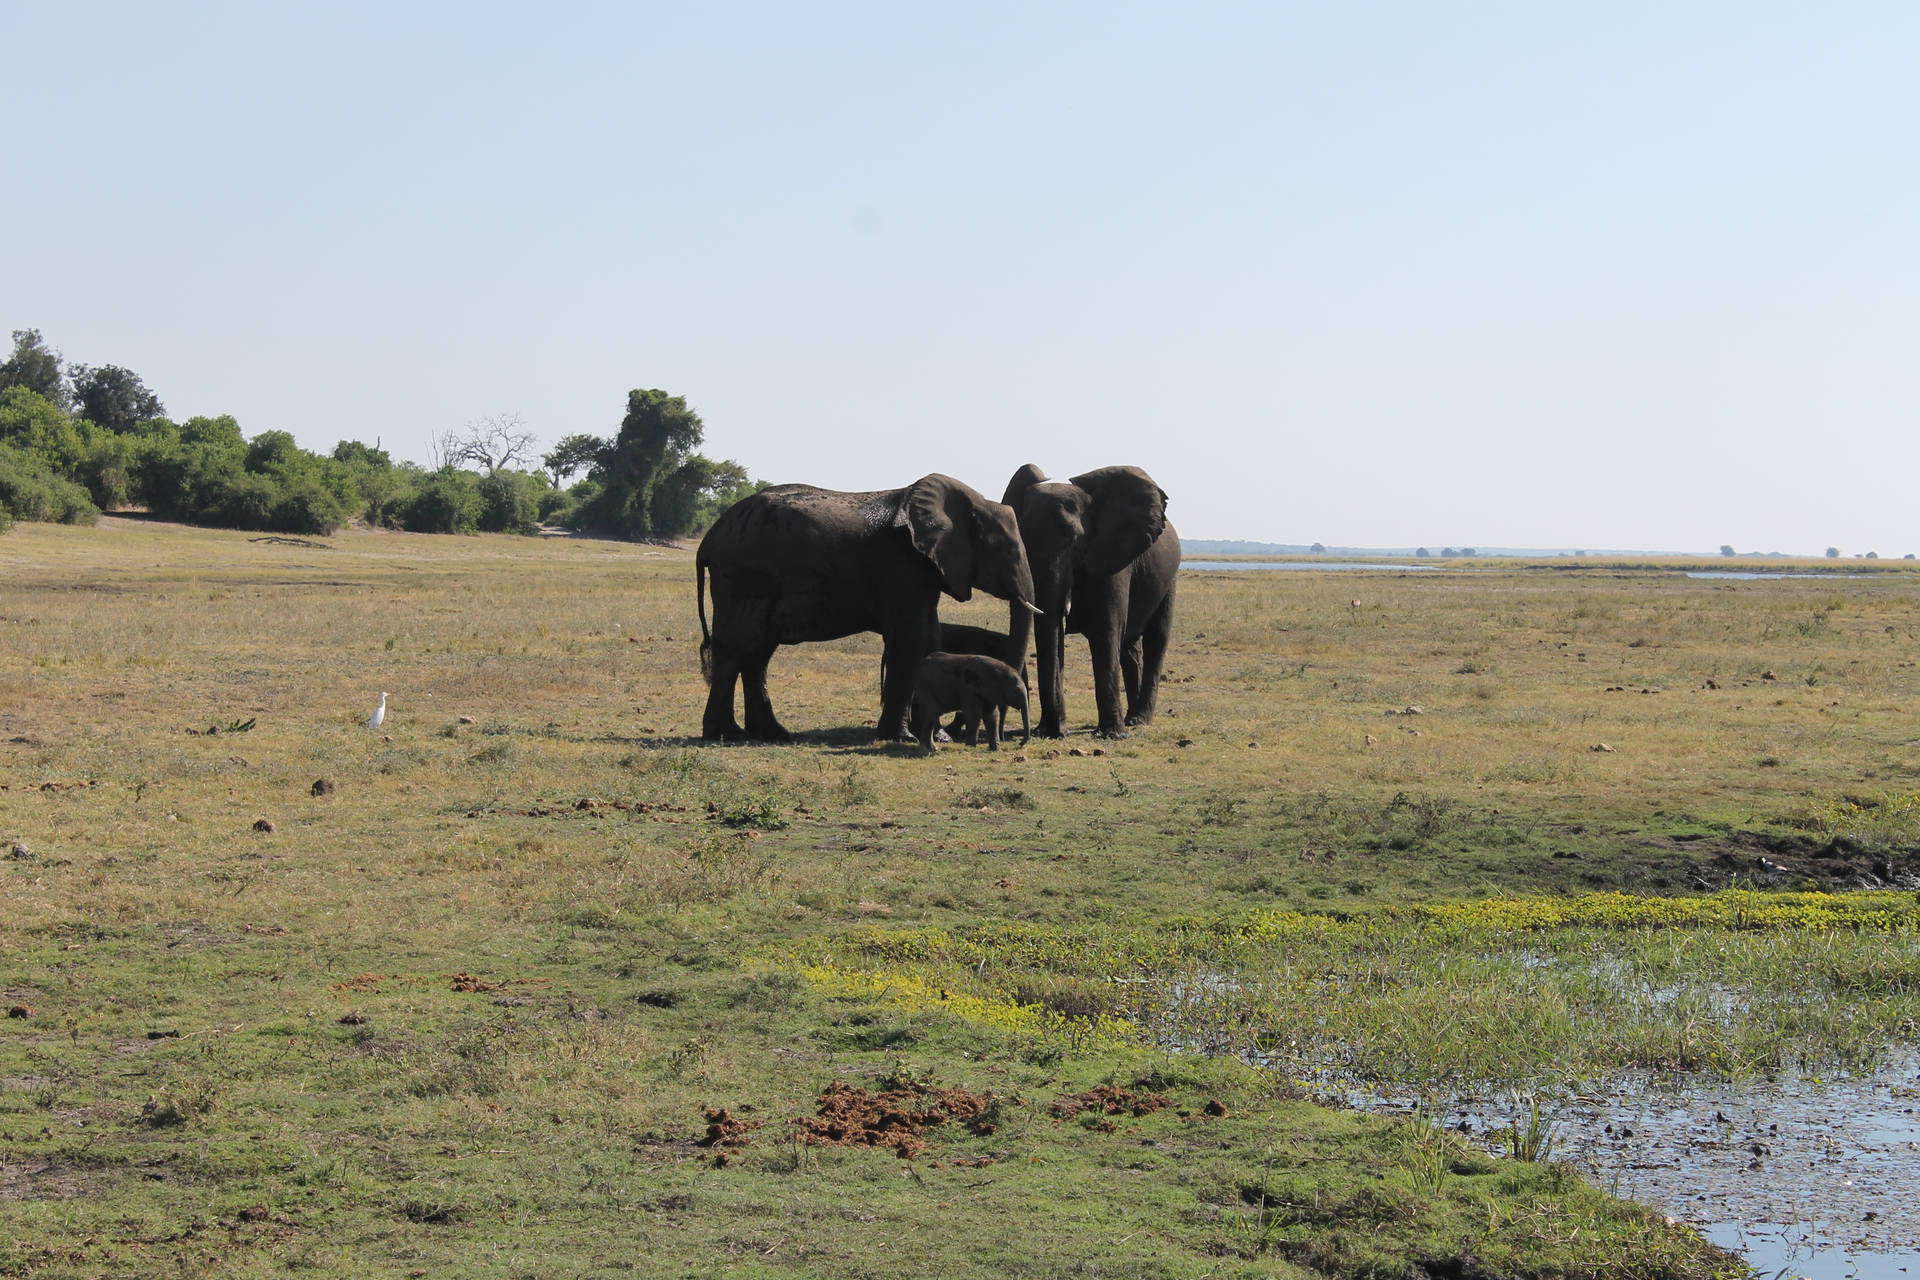 Zambia Elephant Family